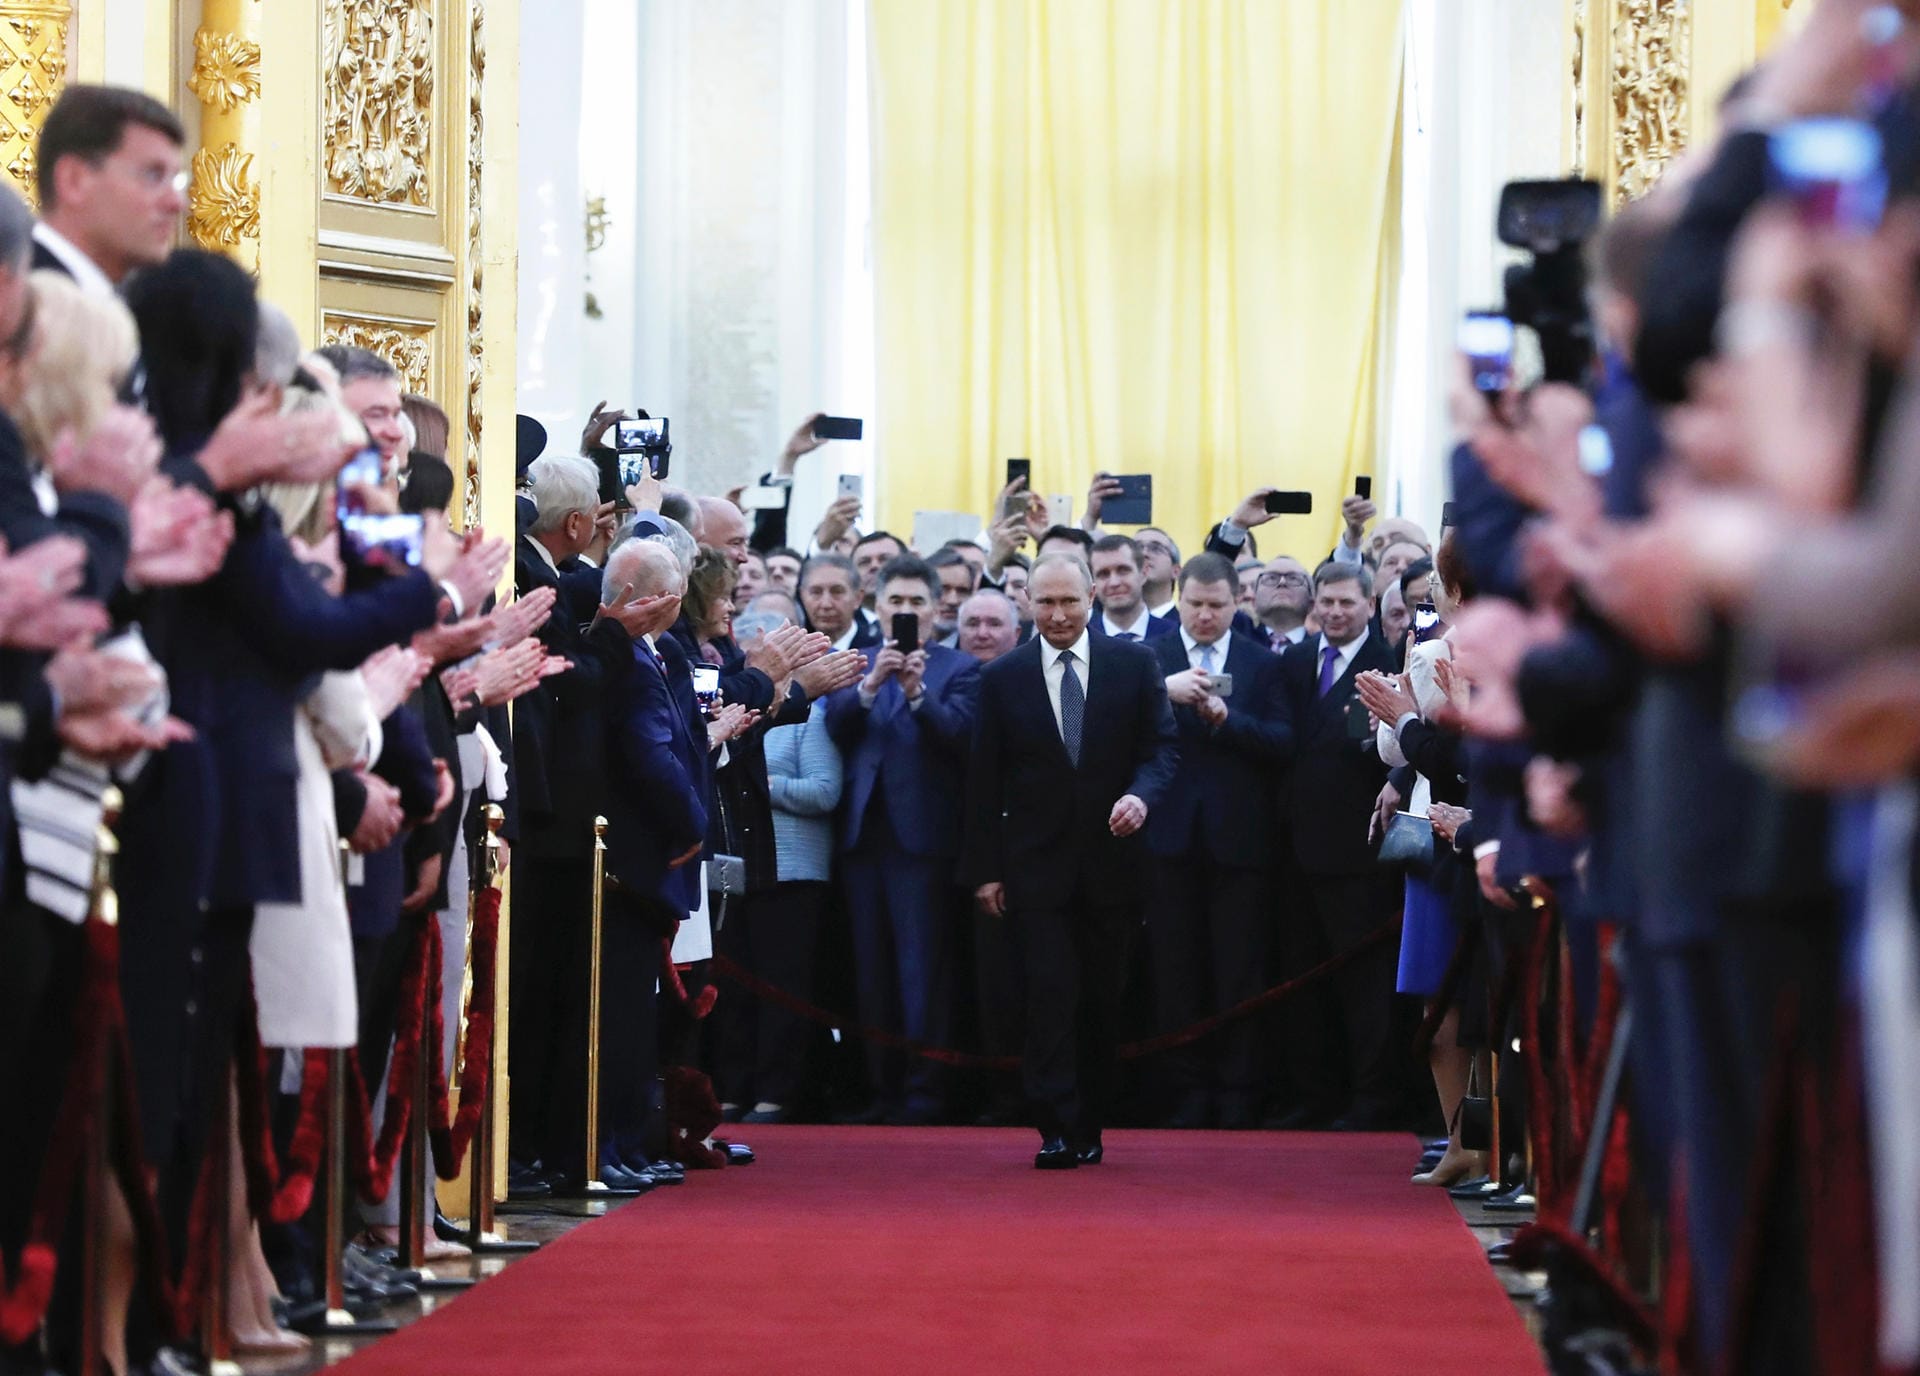 Der Präsident empfängt: Rund 5000 Hundert Gäste säumten den roten Teppich, auf dem Wladimir Putin den Kreml durchschritt.